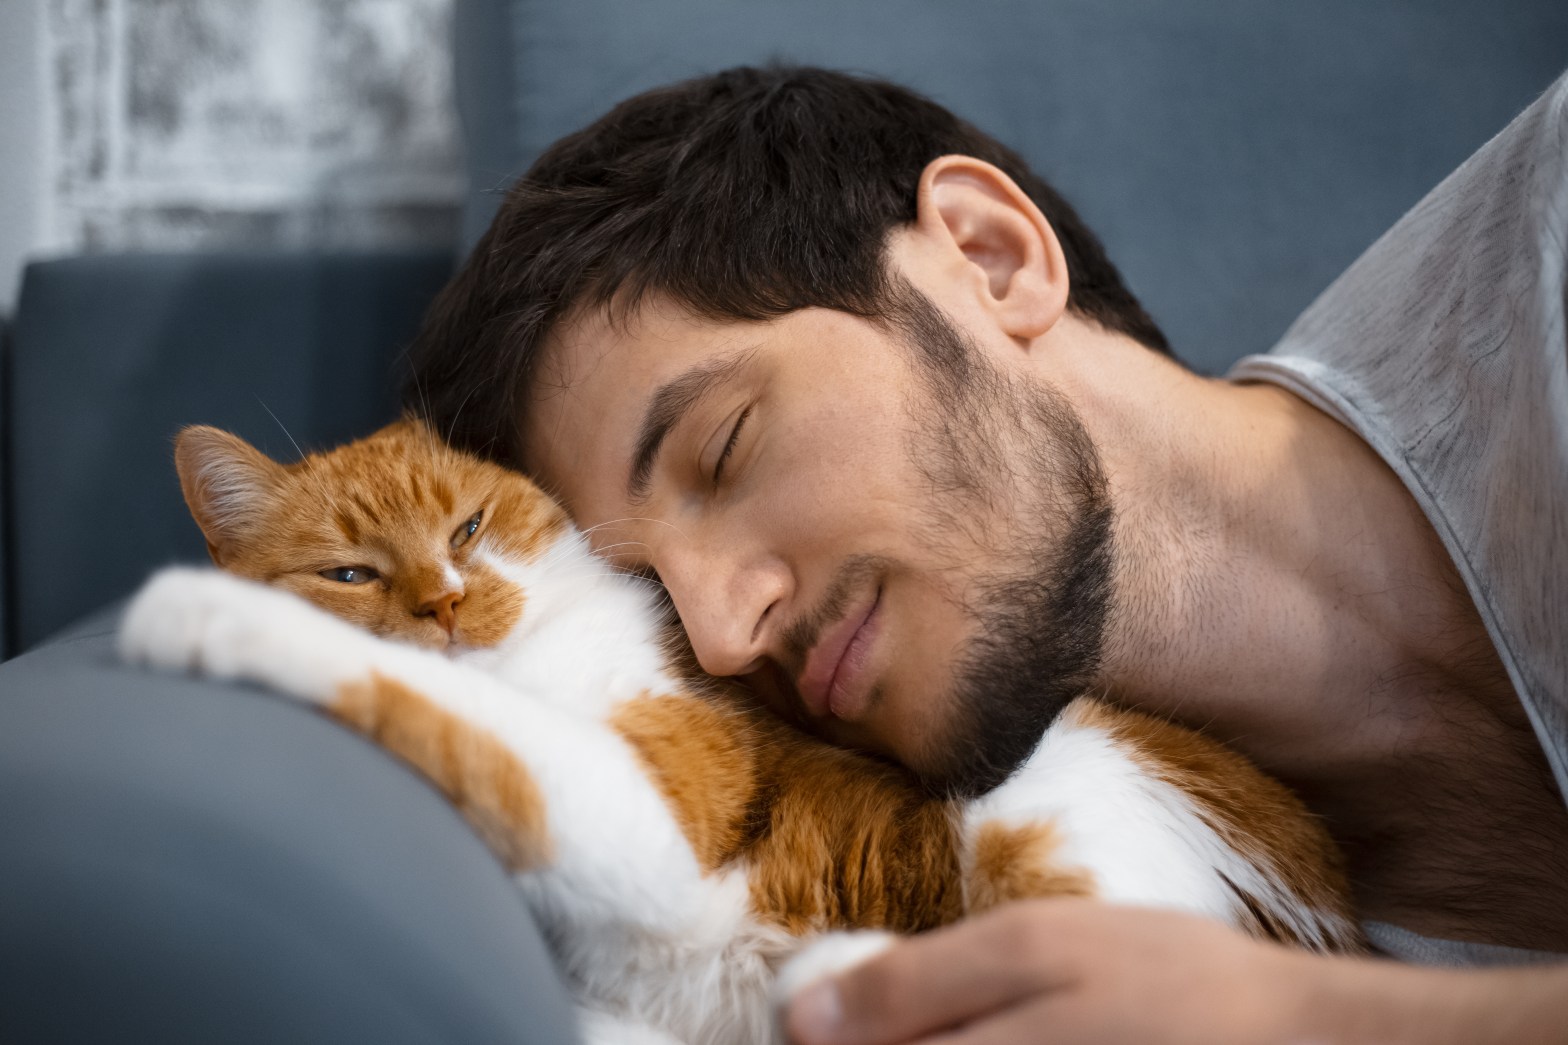 Petting men. Кошка и мужчина спят картинки. Man and Cat Dancing on Sofa.